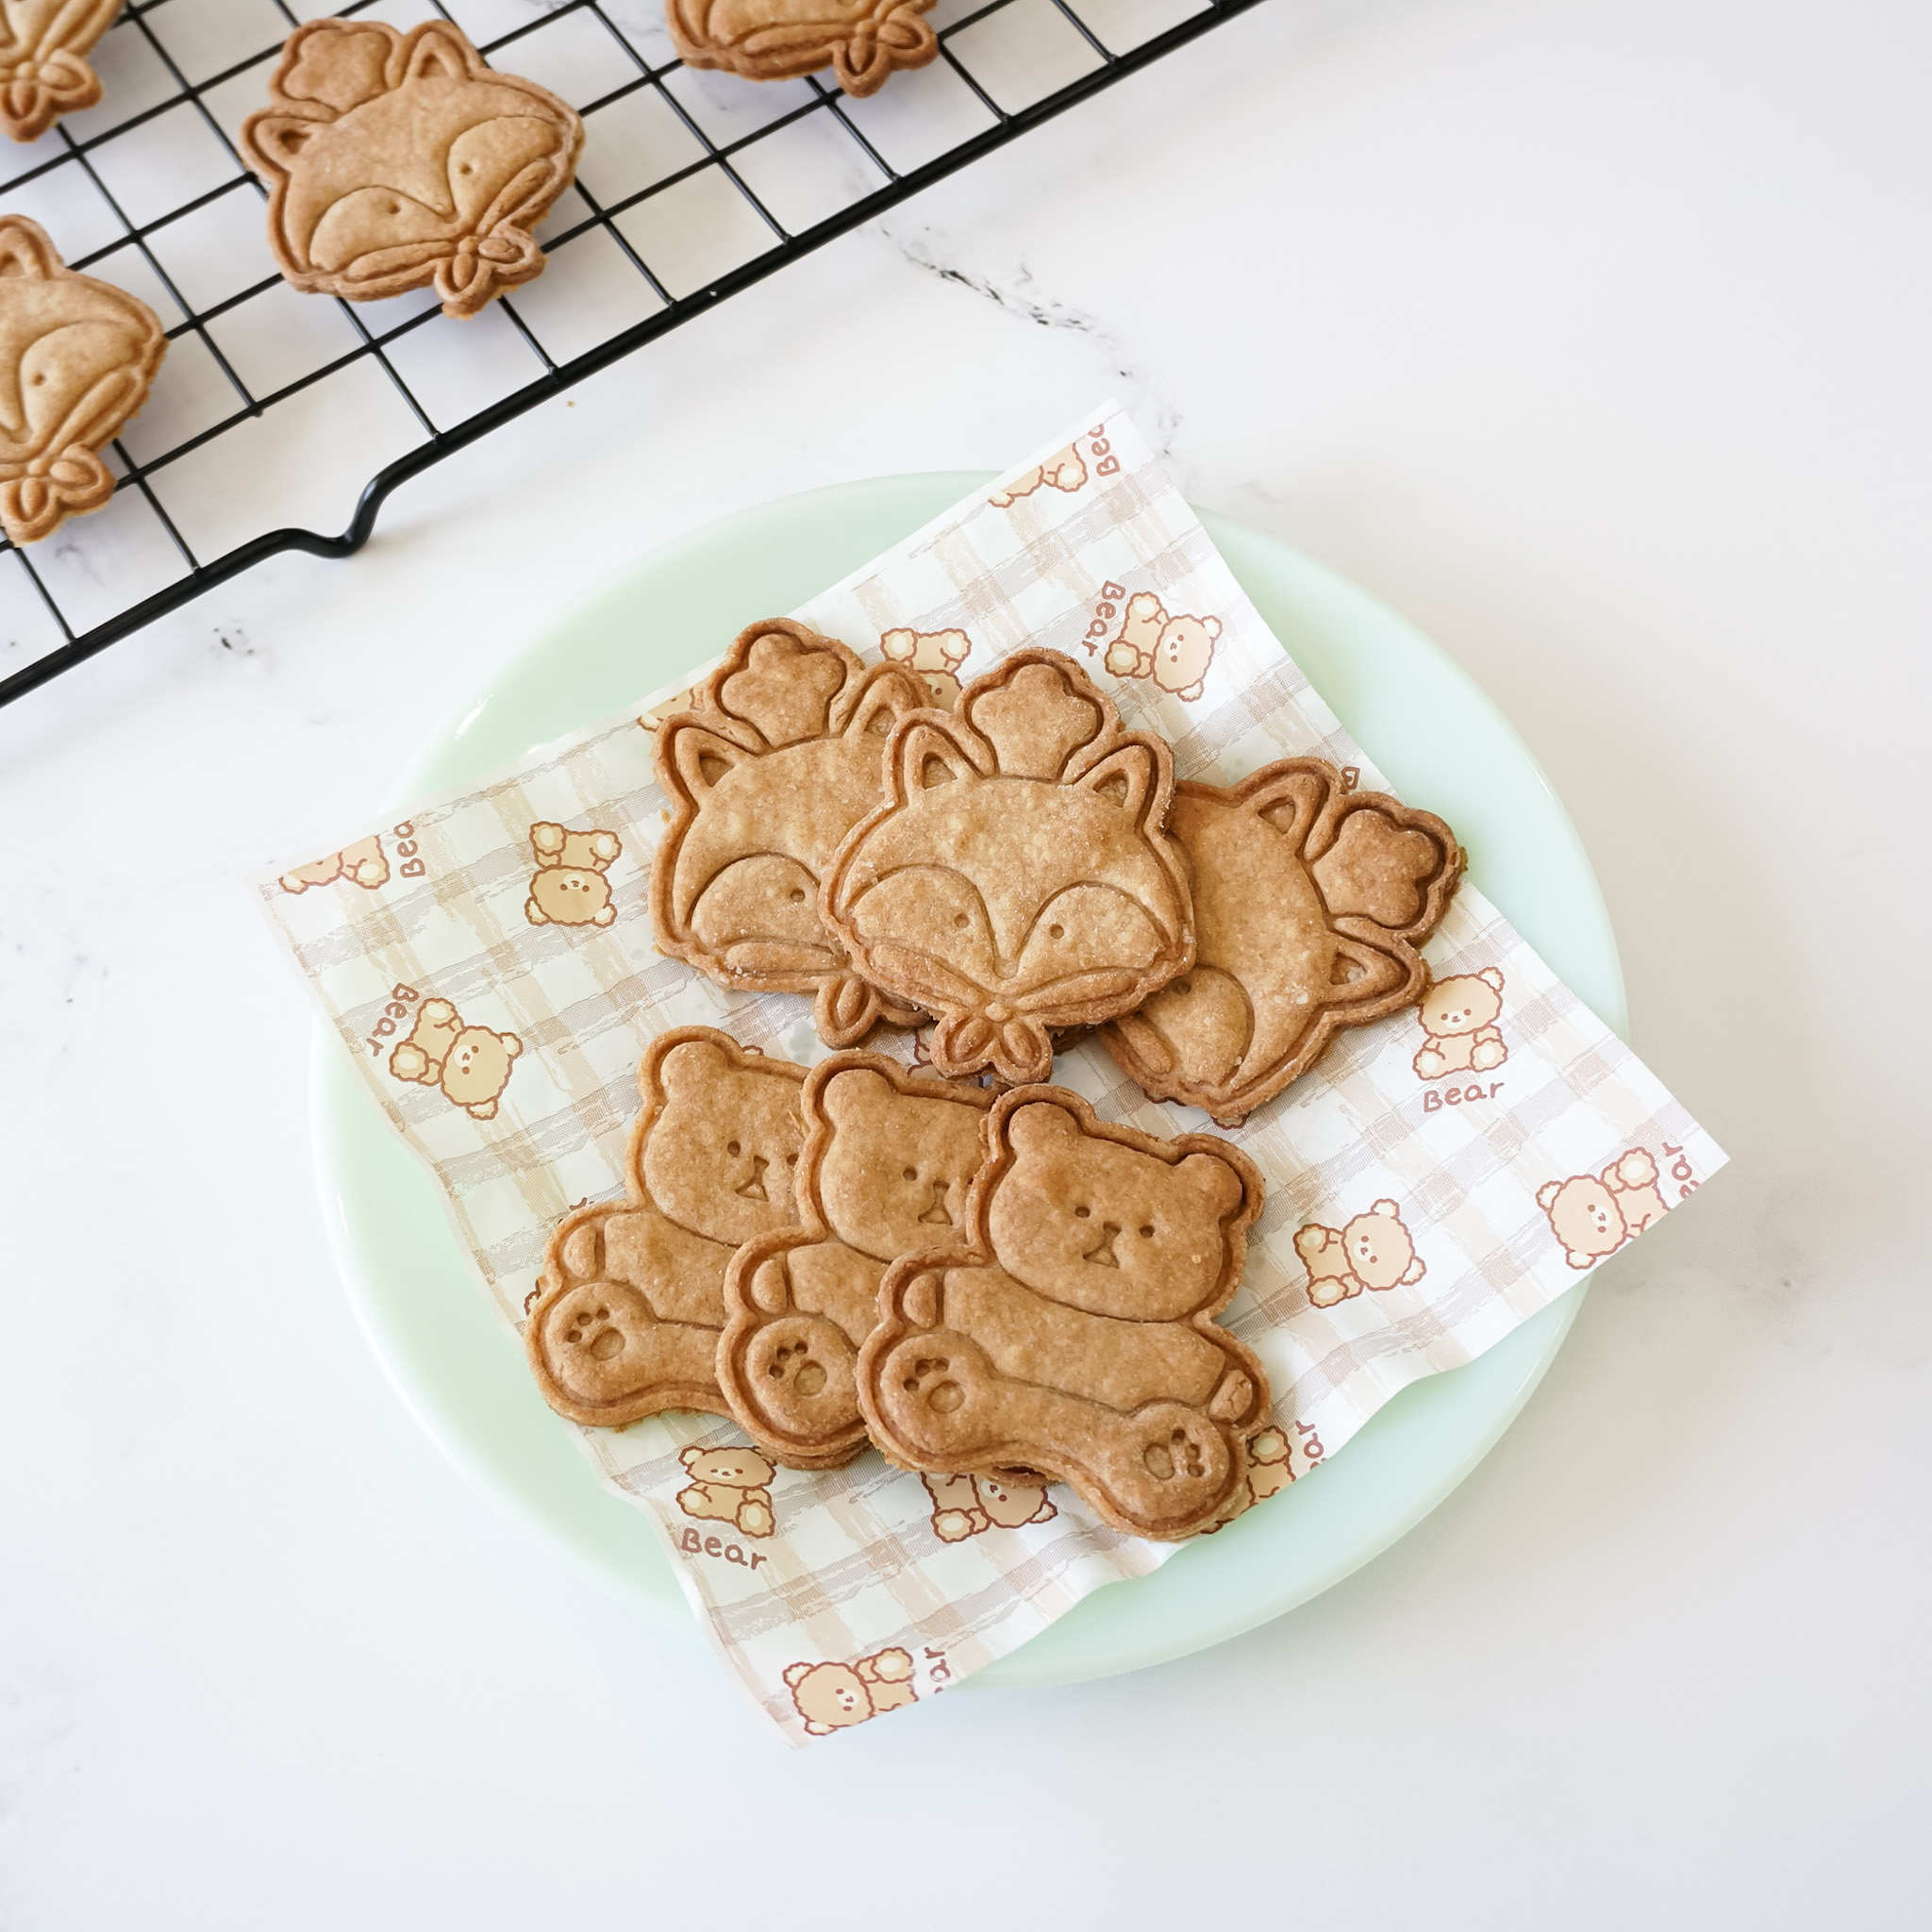 cookies, bear printed deli paper